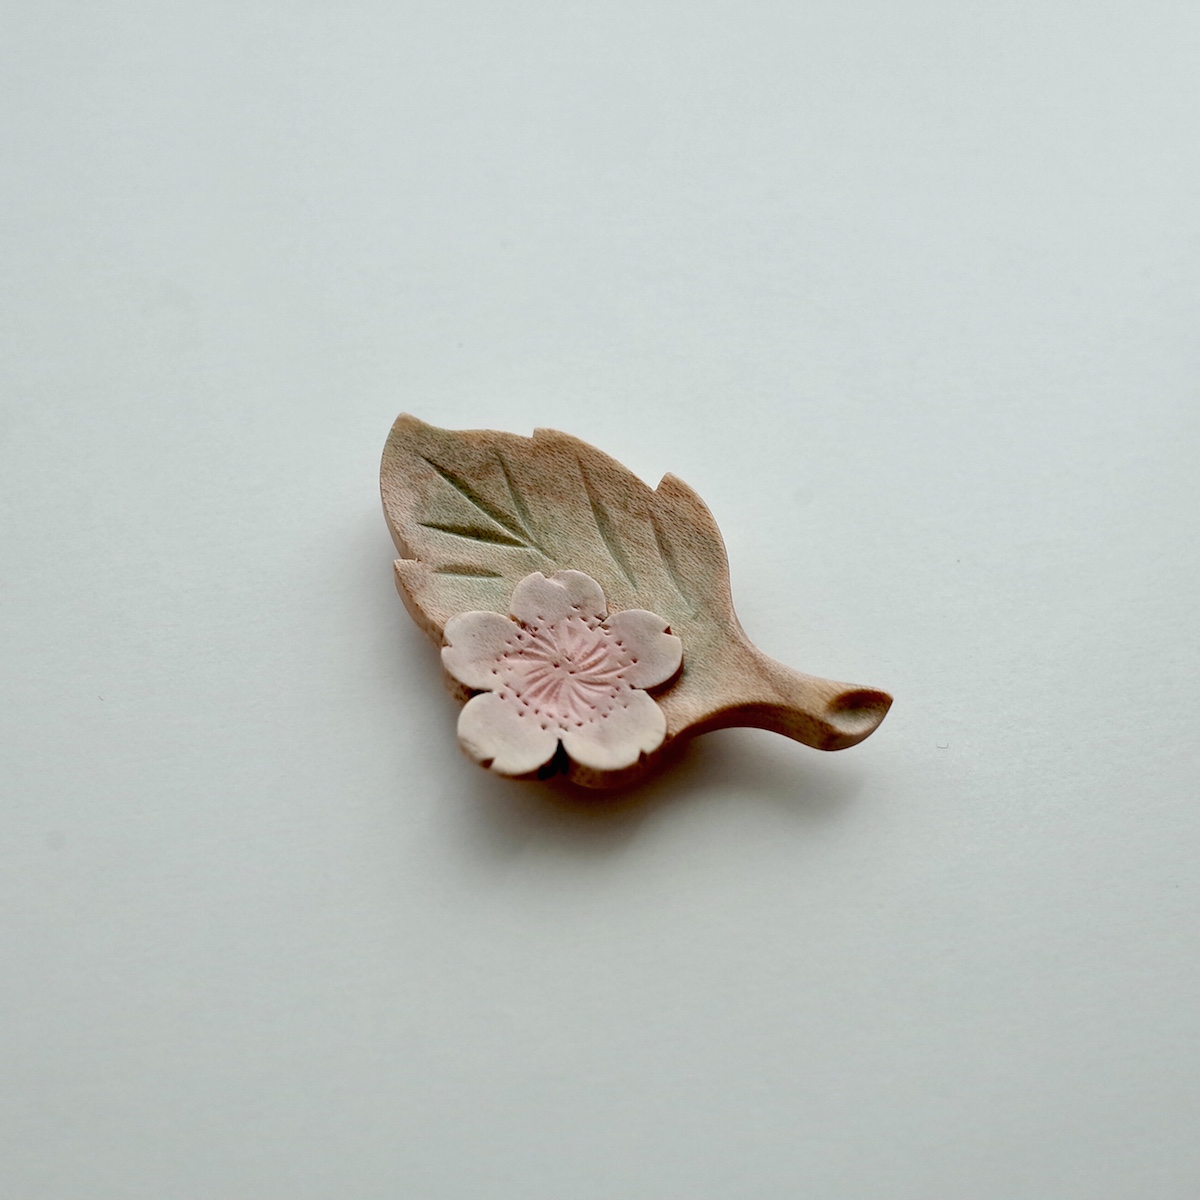 【受注】軽井沢彫:カービング:Sakura with leaf;